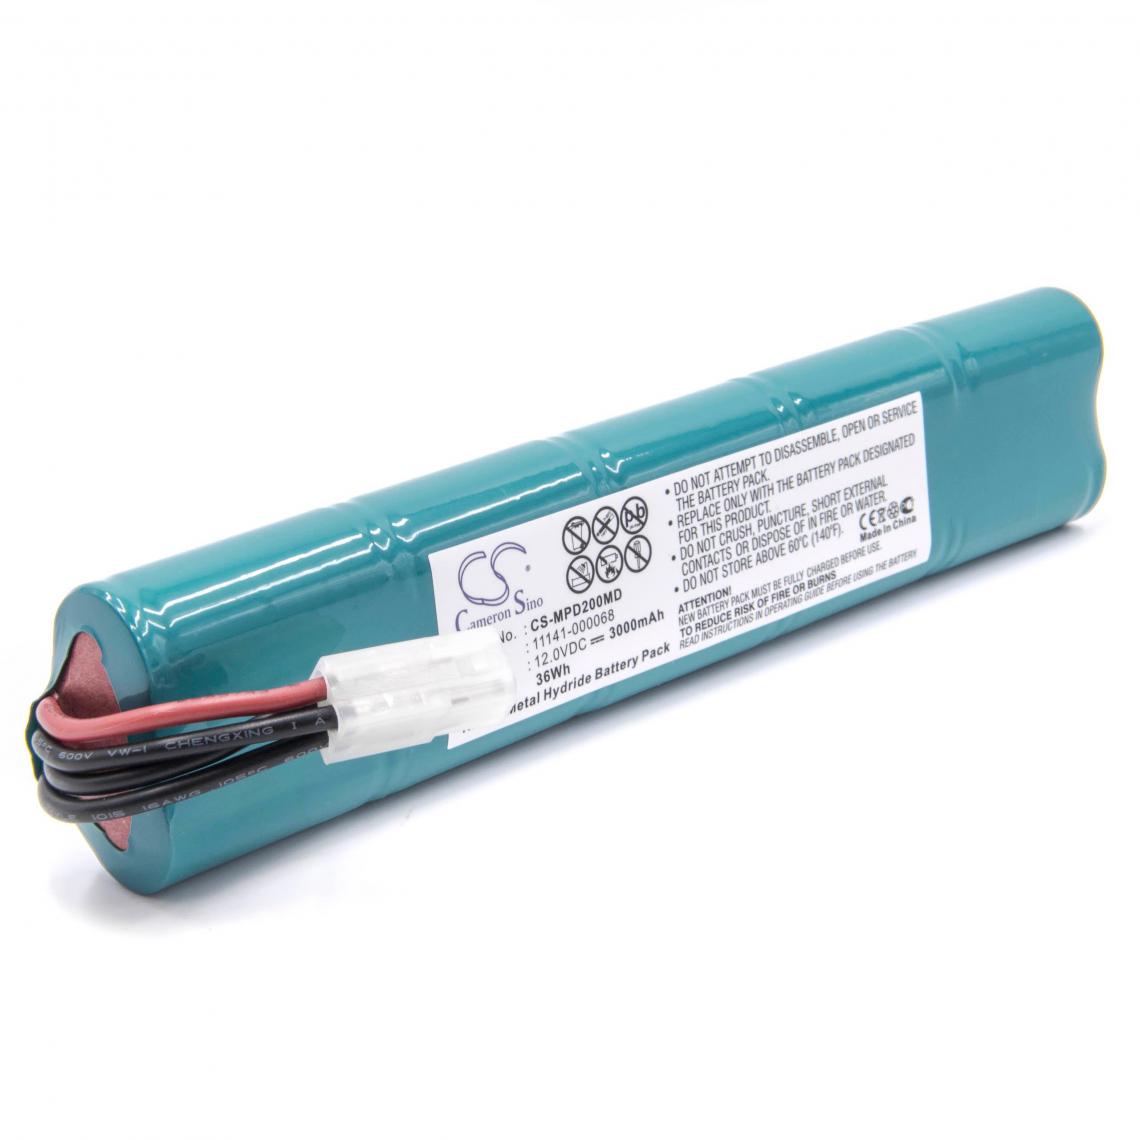 Vhbw - vhbw Batterie remplacement pour 11141-000068 pour appareil médical (3000mAh, 12V, NiMH) - Piles spécifiques